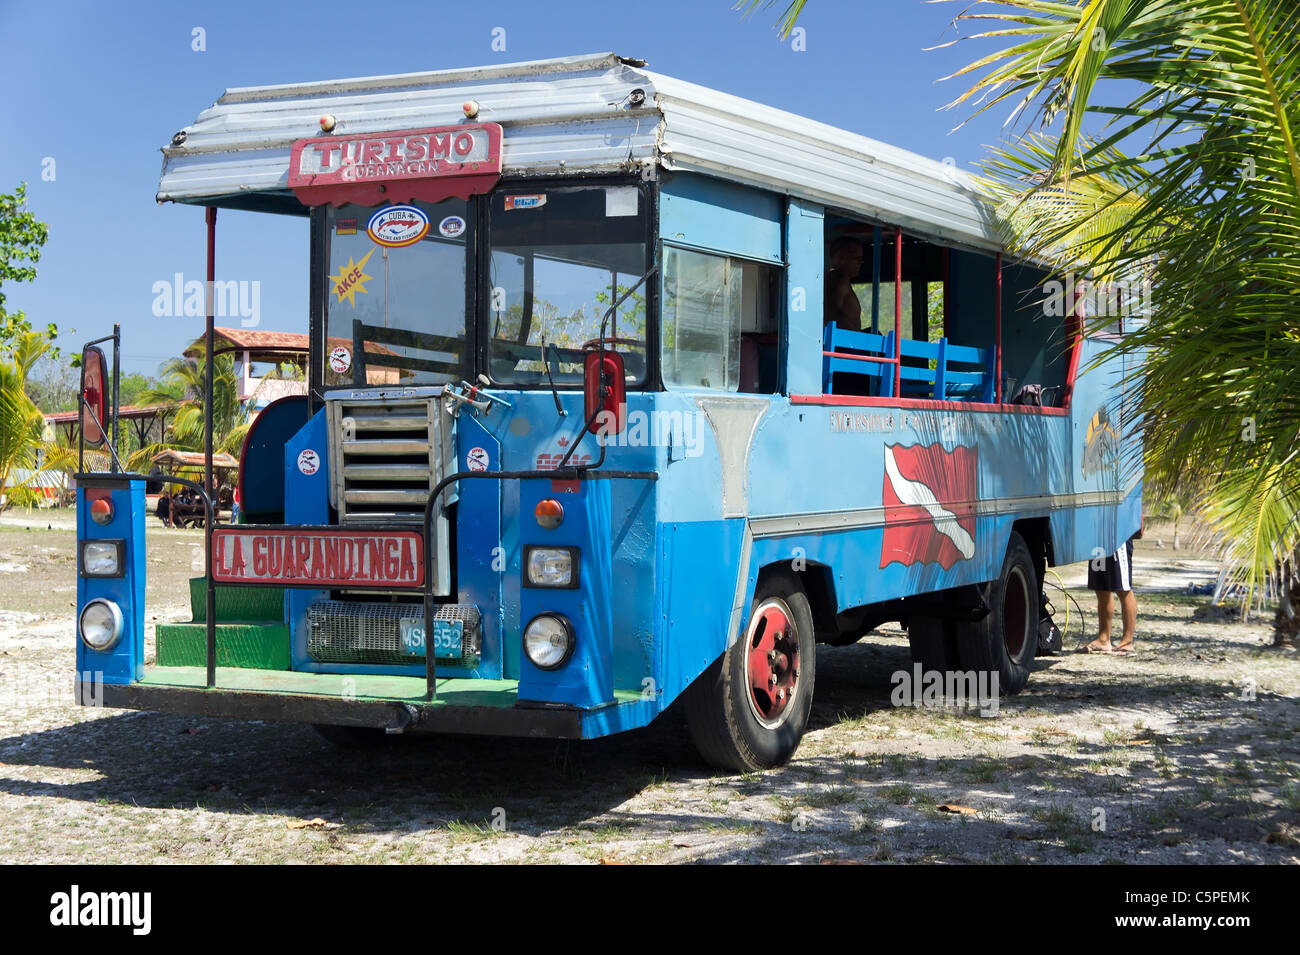 Bus touristique Cubaine, Playa Giron, Cuba Banque D'Images